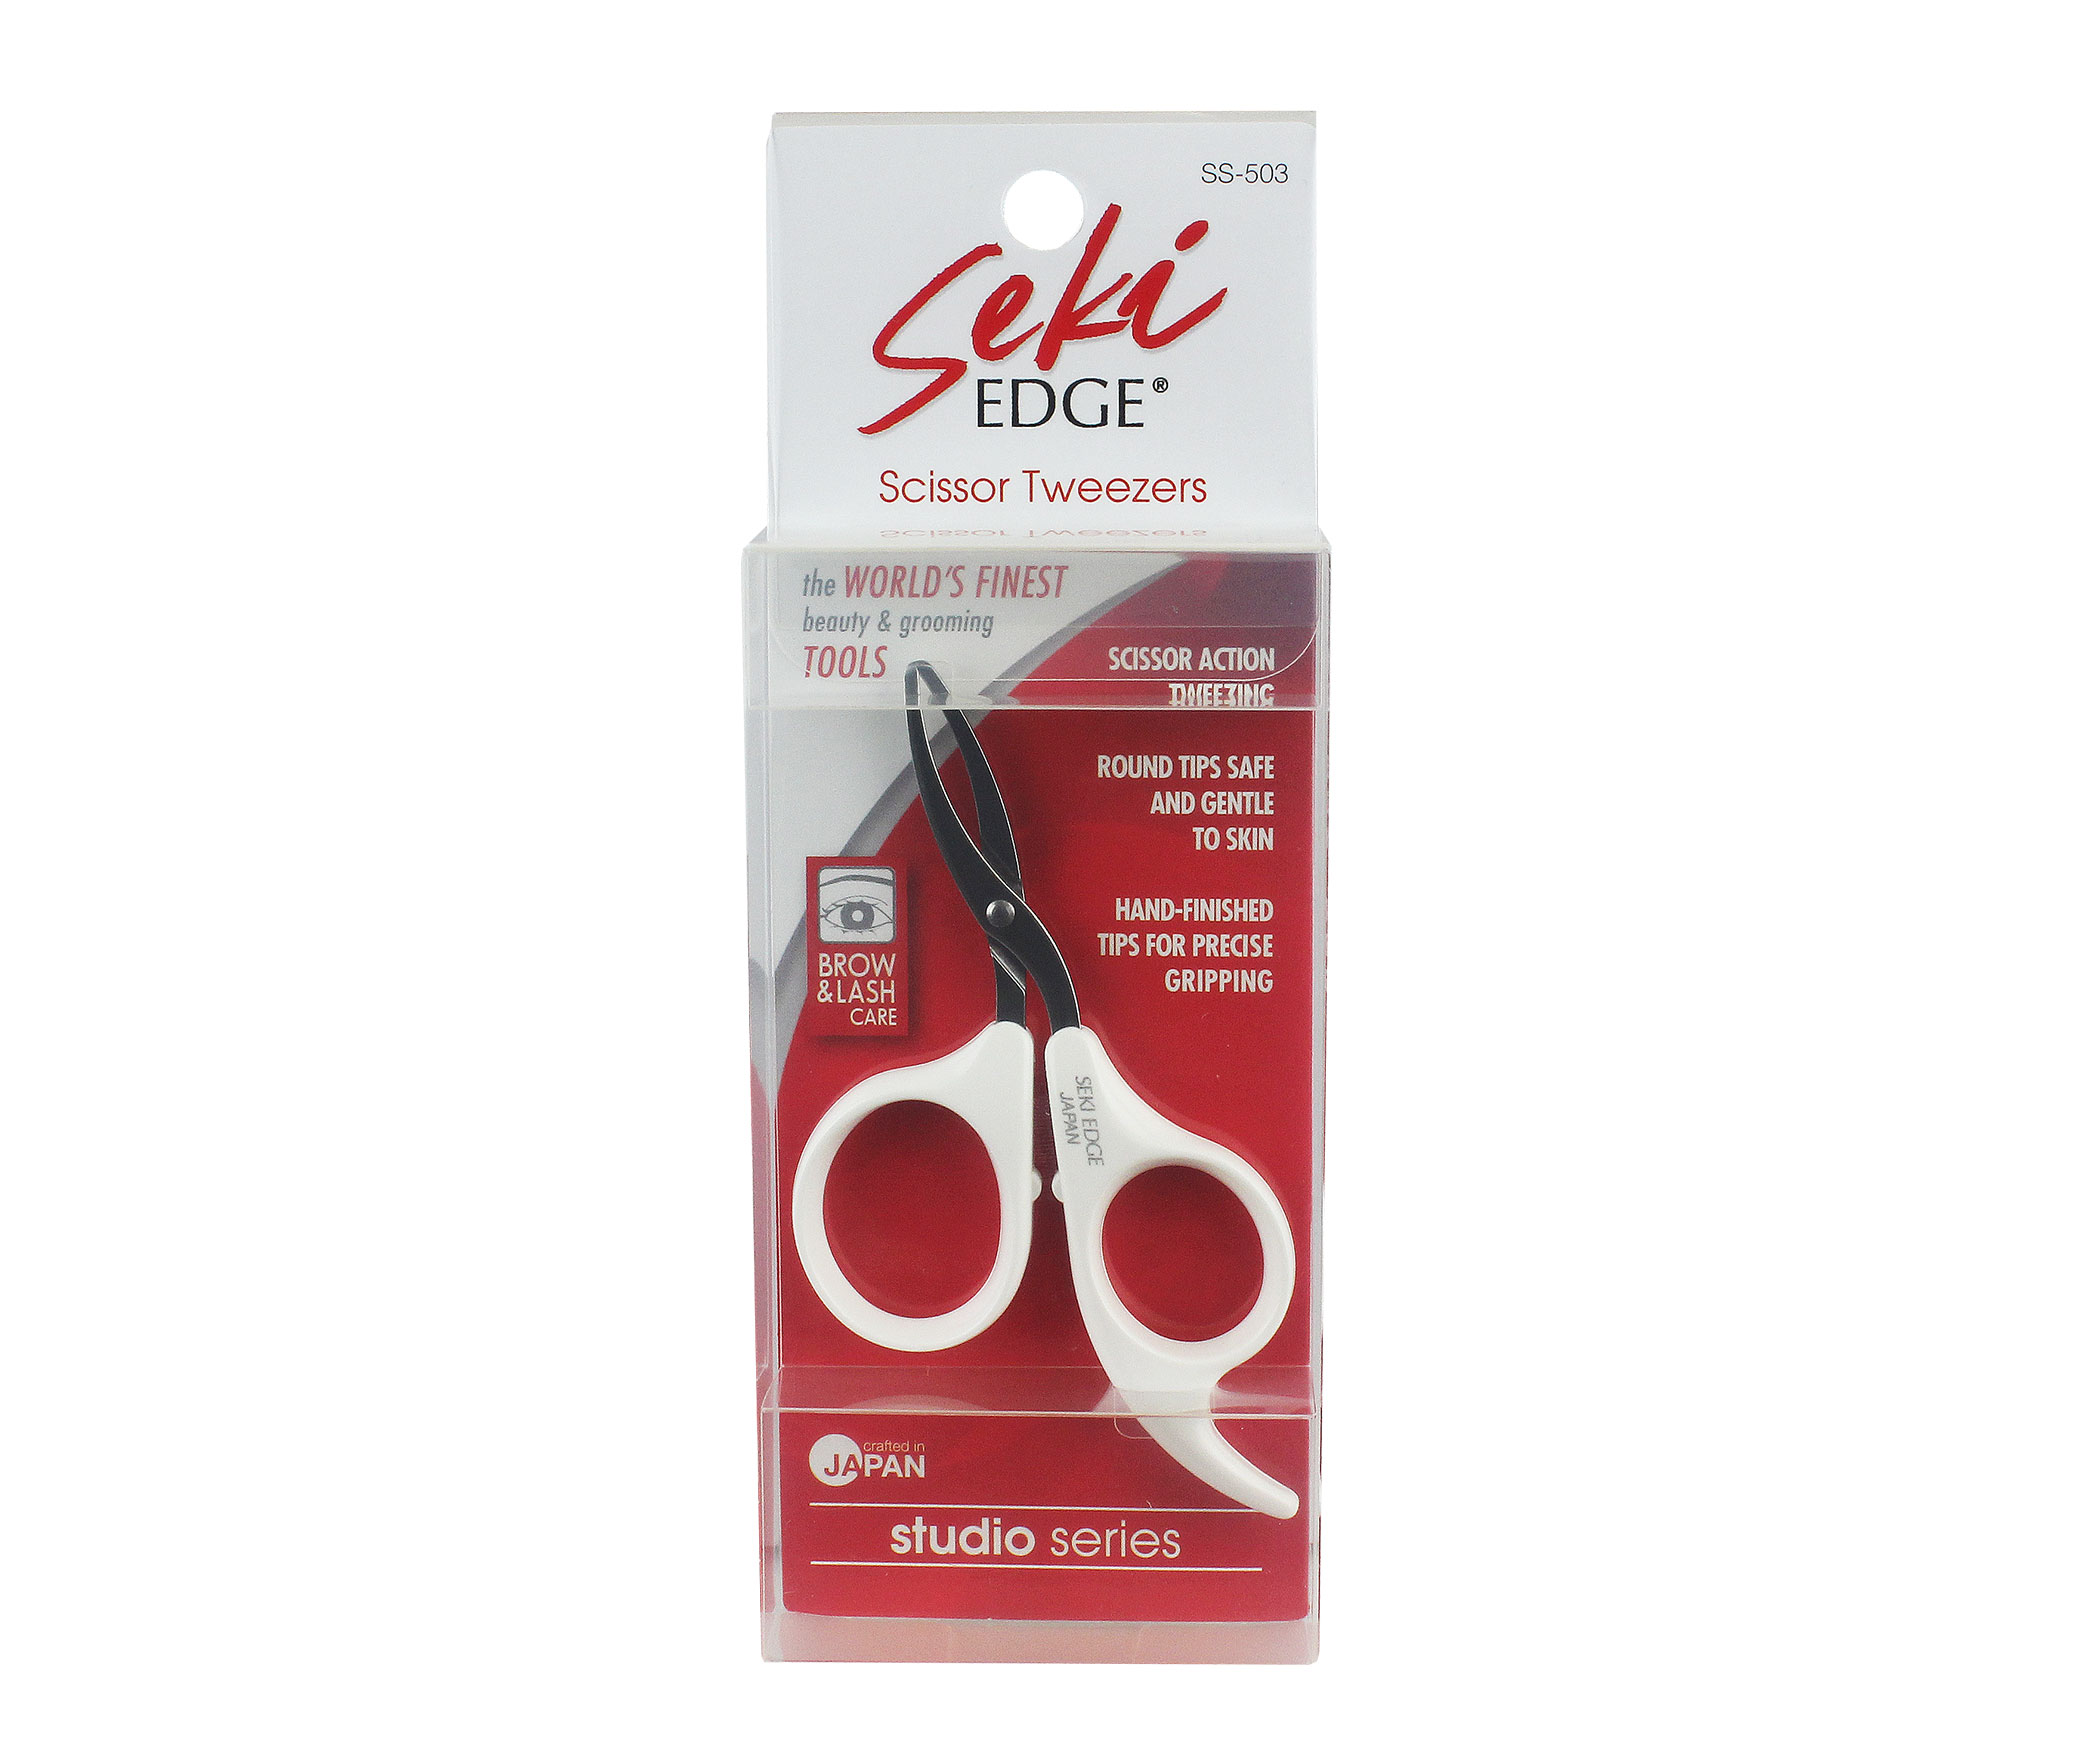 Seki Edge Scissors Tweezer (SS-503) package